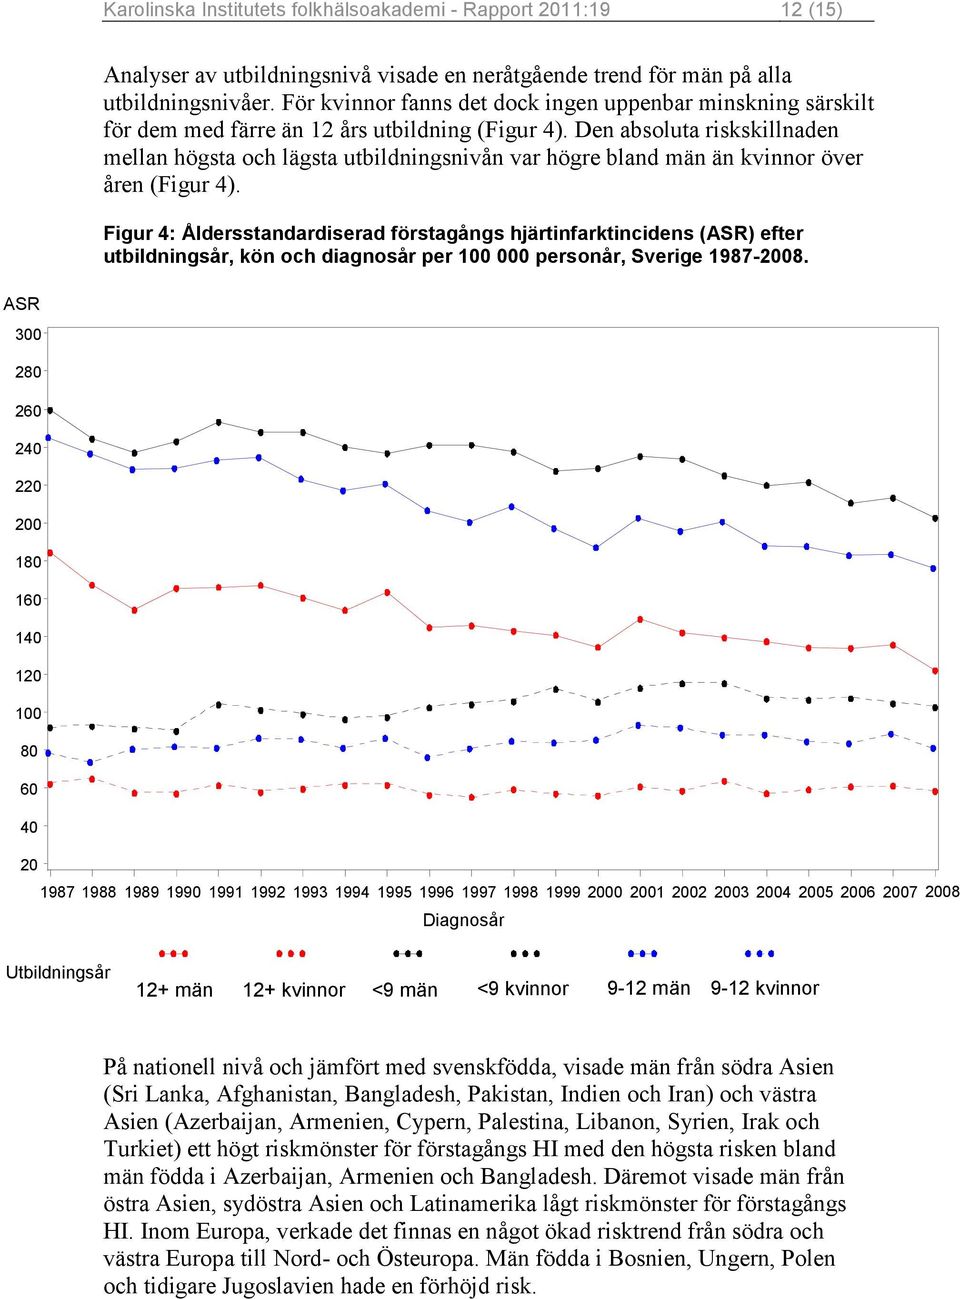 Den absoluta riskskillnaden mellan högsta och lägsta utbildningsnivån var högre bland män än kvinnor över åren (Figur 4).